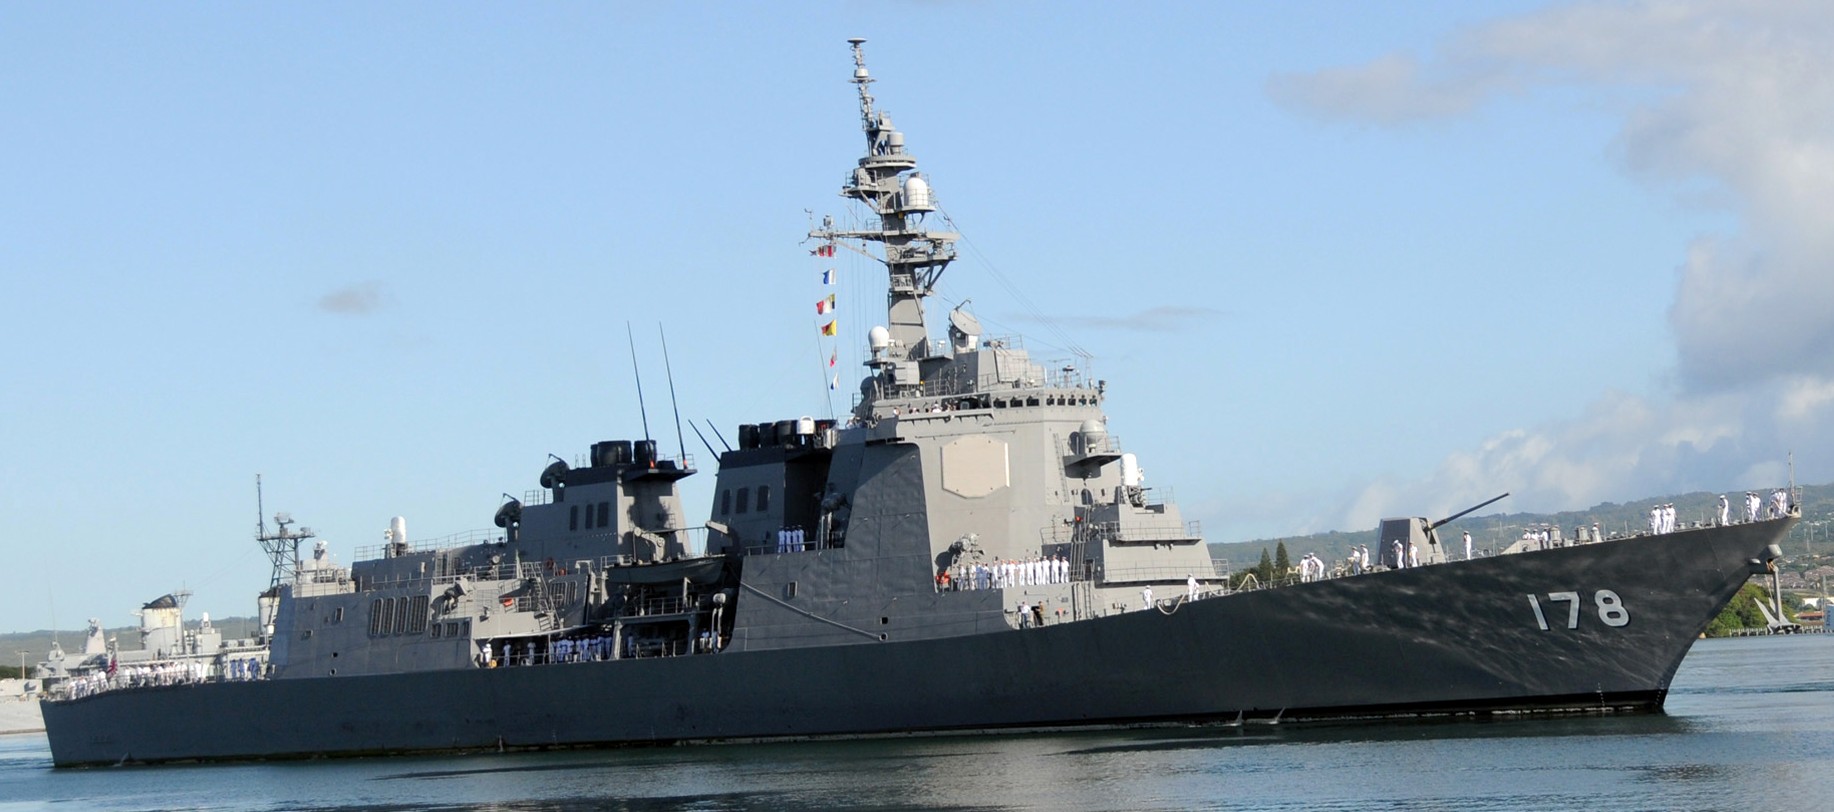 ddg-178 jds ashigara atago class guided missile destroyer japan maritime self defense force jmsdf 18